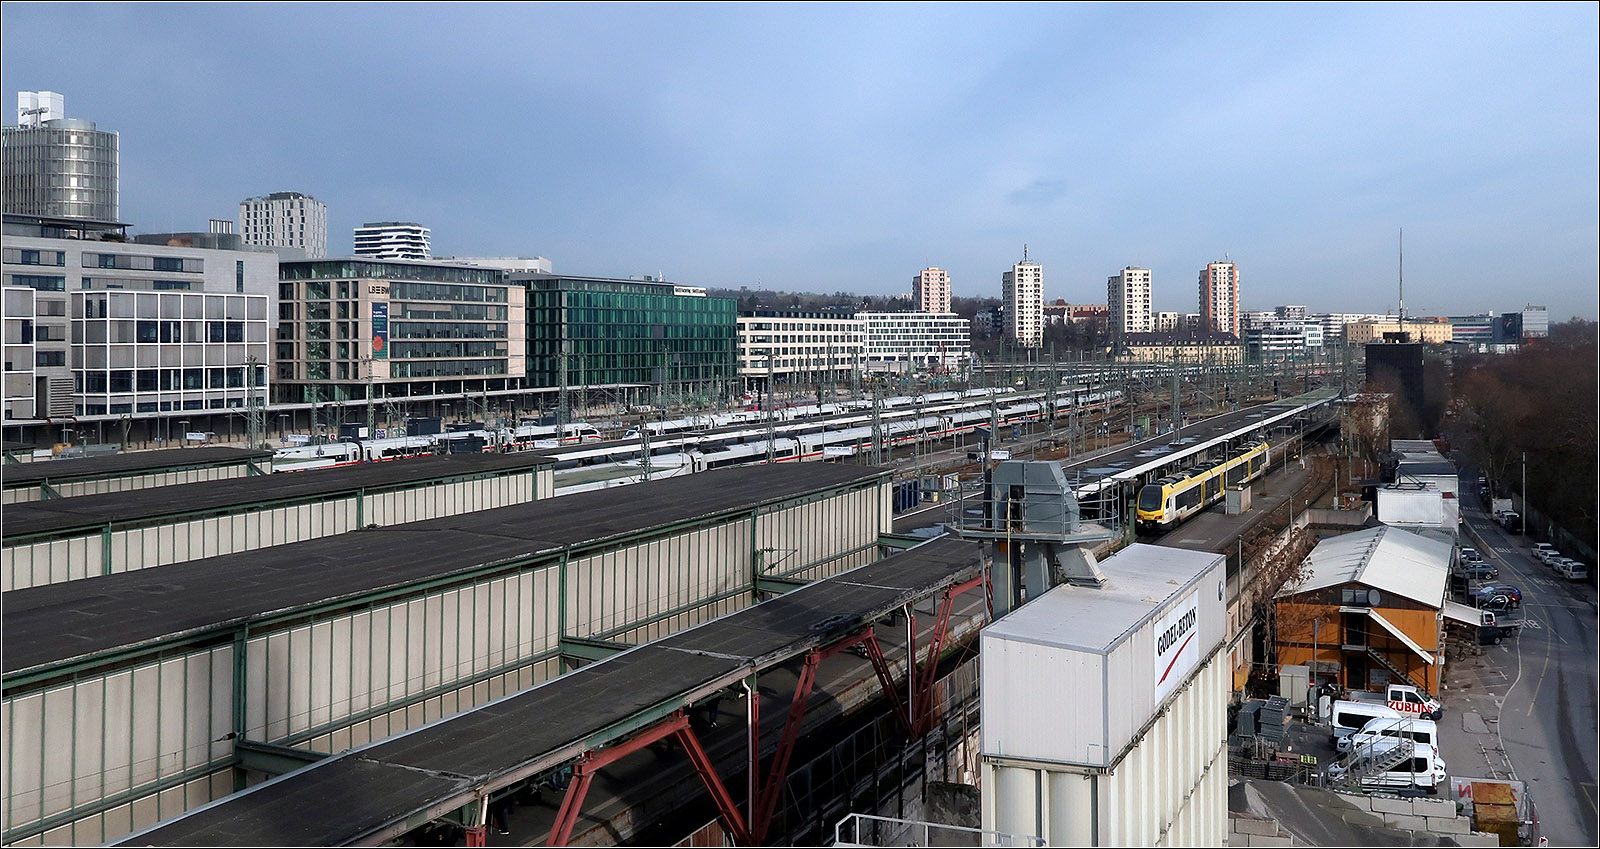 Wohl nicht mehr allzu lange -

... werden die alten Gleis- und Bahnsteiganlagen des Stuttgarter Hauptbahnhofes in Betrieb sein. Ich persönlich kann mir nicht ganz vorstellen, dass der neue Bahnhof 2025 fertig sein wird, vielleicht ist 2027 realistischer.

Vorne verlässt auf Gleis 16 ein MEX-Zug den Bahnhof, während insgesamt drei ICE-Züge erkennbar sind und weiter hinten auch ein S-Bahnzug gleich in den Tunnel abtauchen wird.

Blick vom InfoTurm.

30.04.2024 (M)